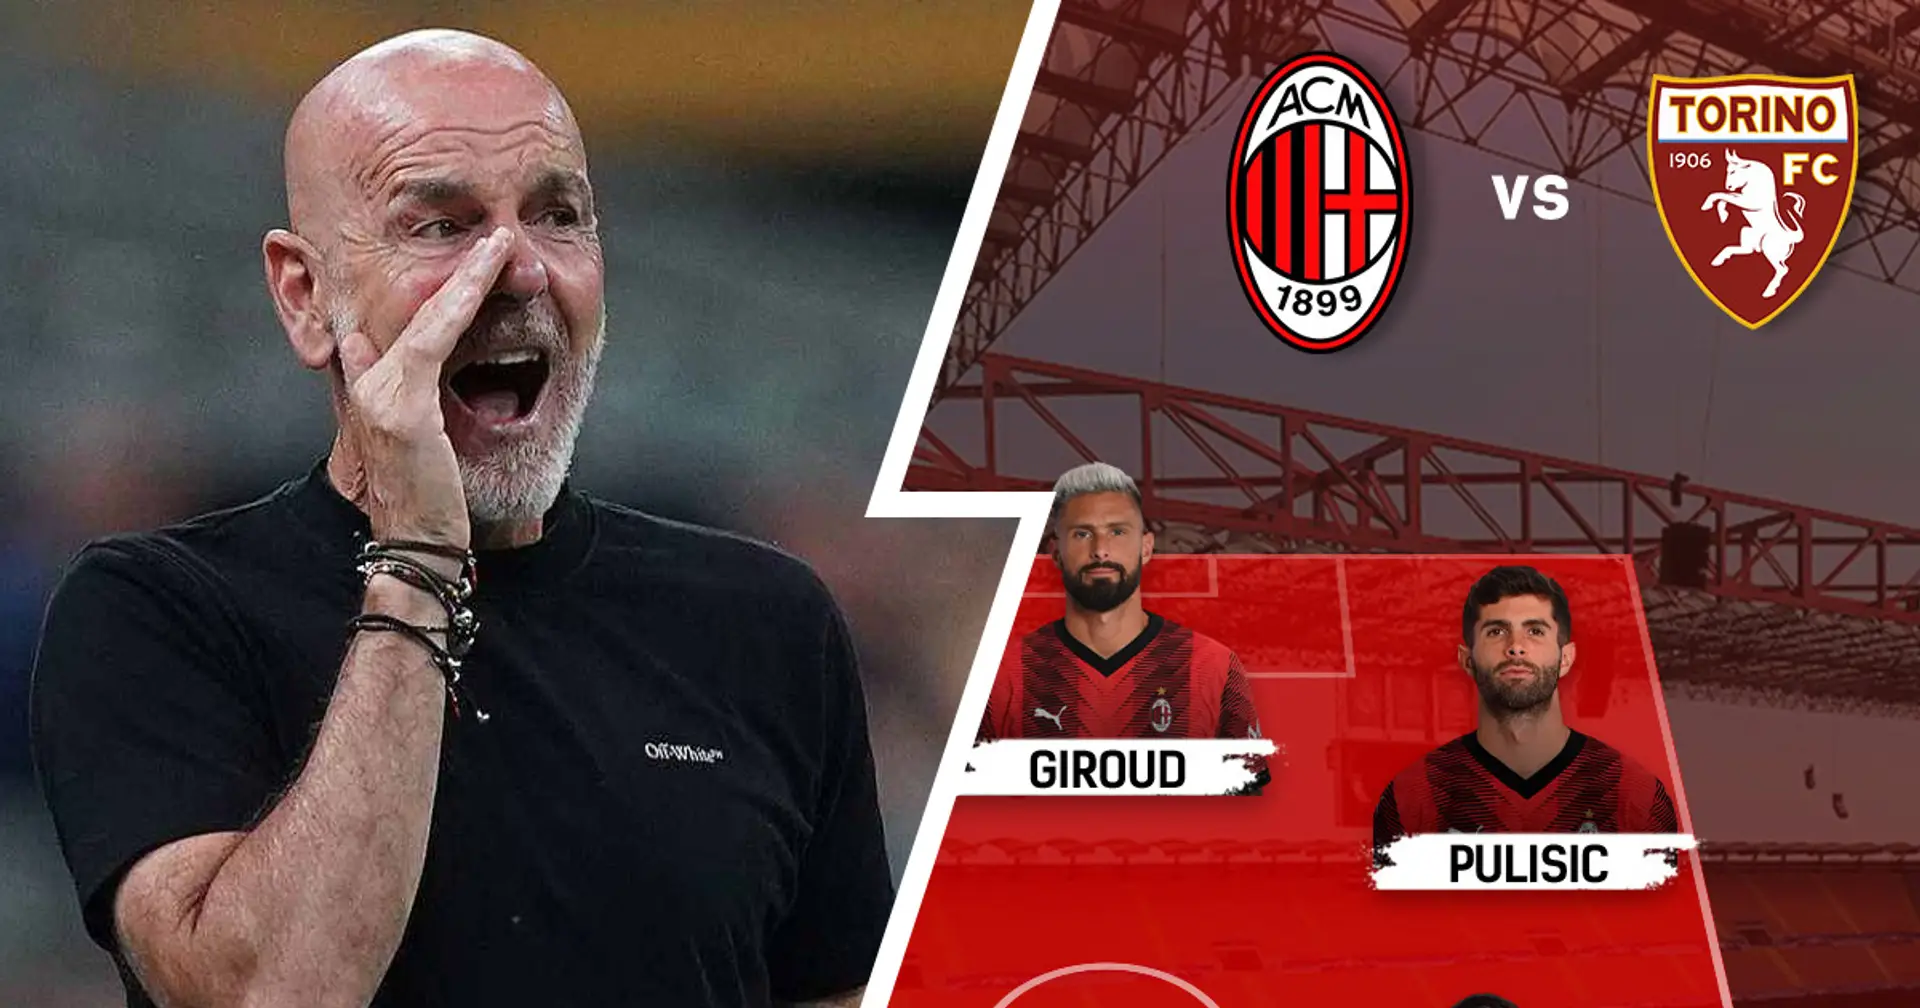 Pioli orientato a schierare i 'titolarissimi': Milan vs Torino, ultime notizie e probabili formazioni